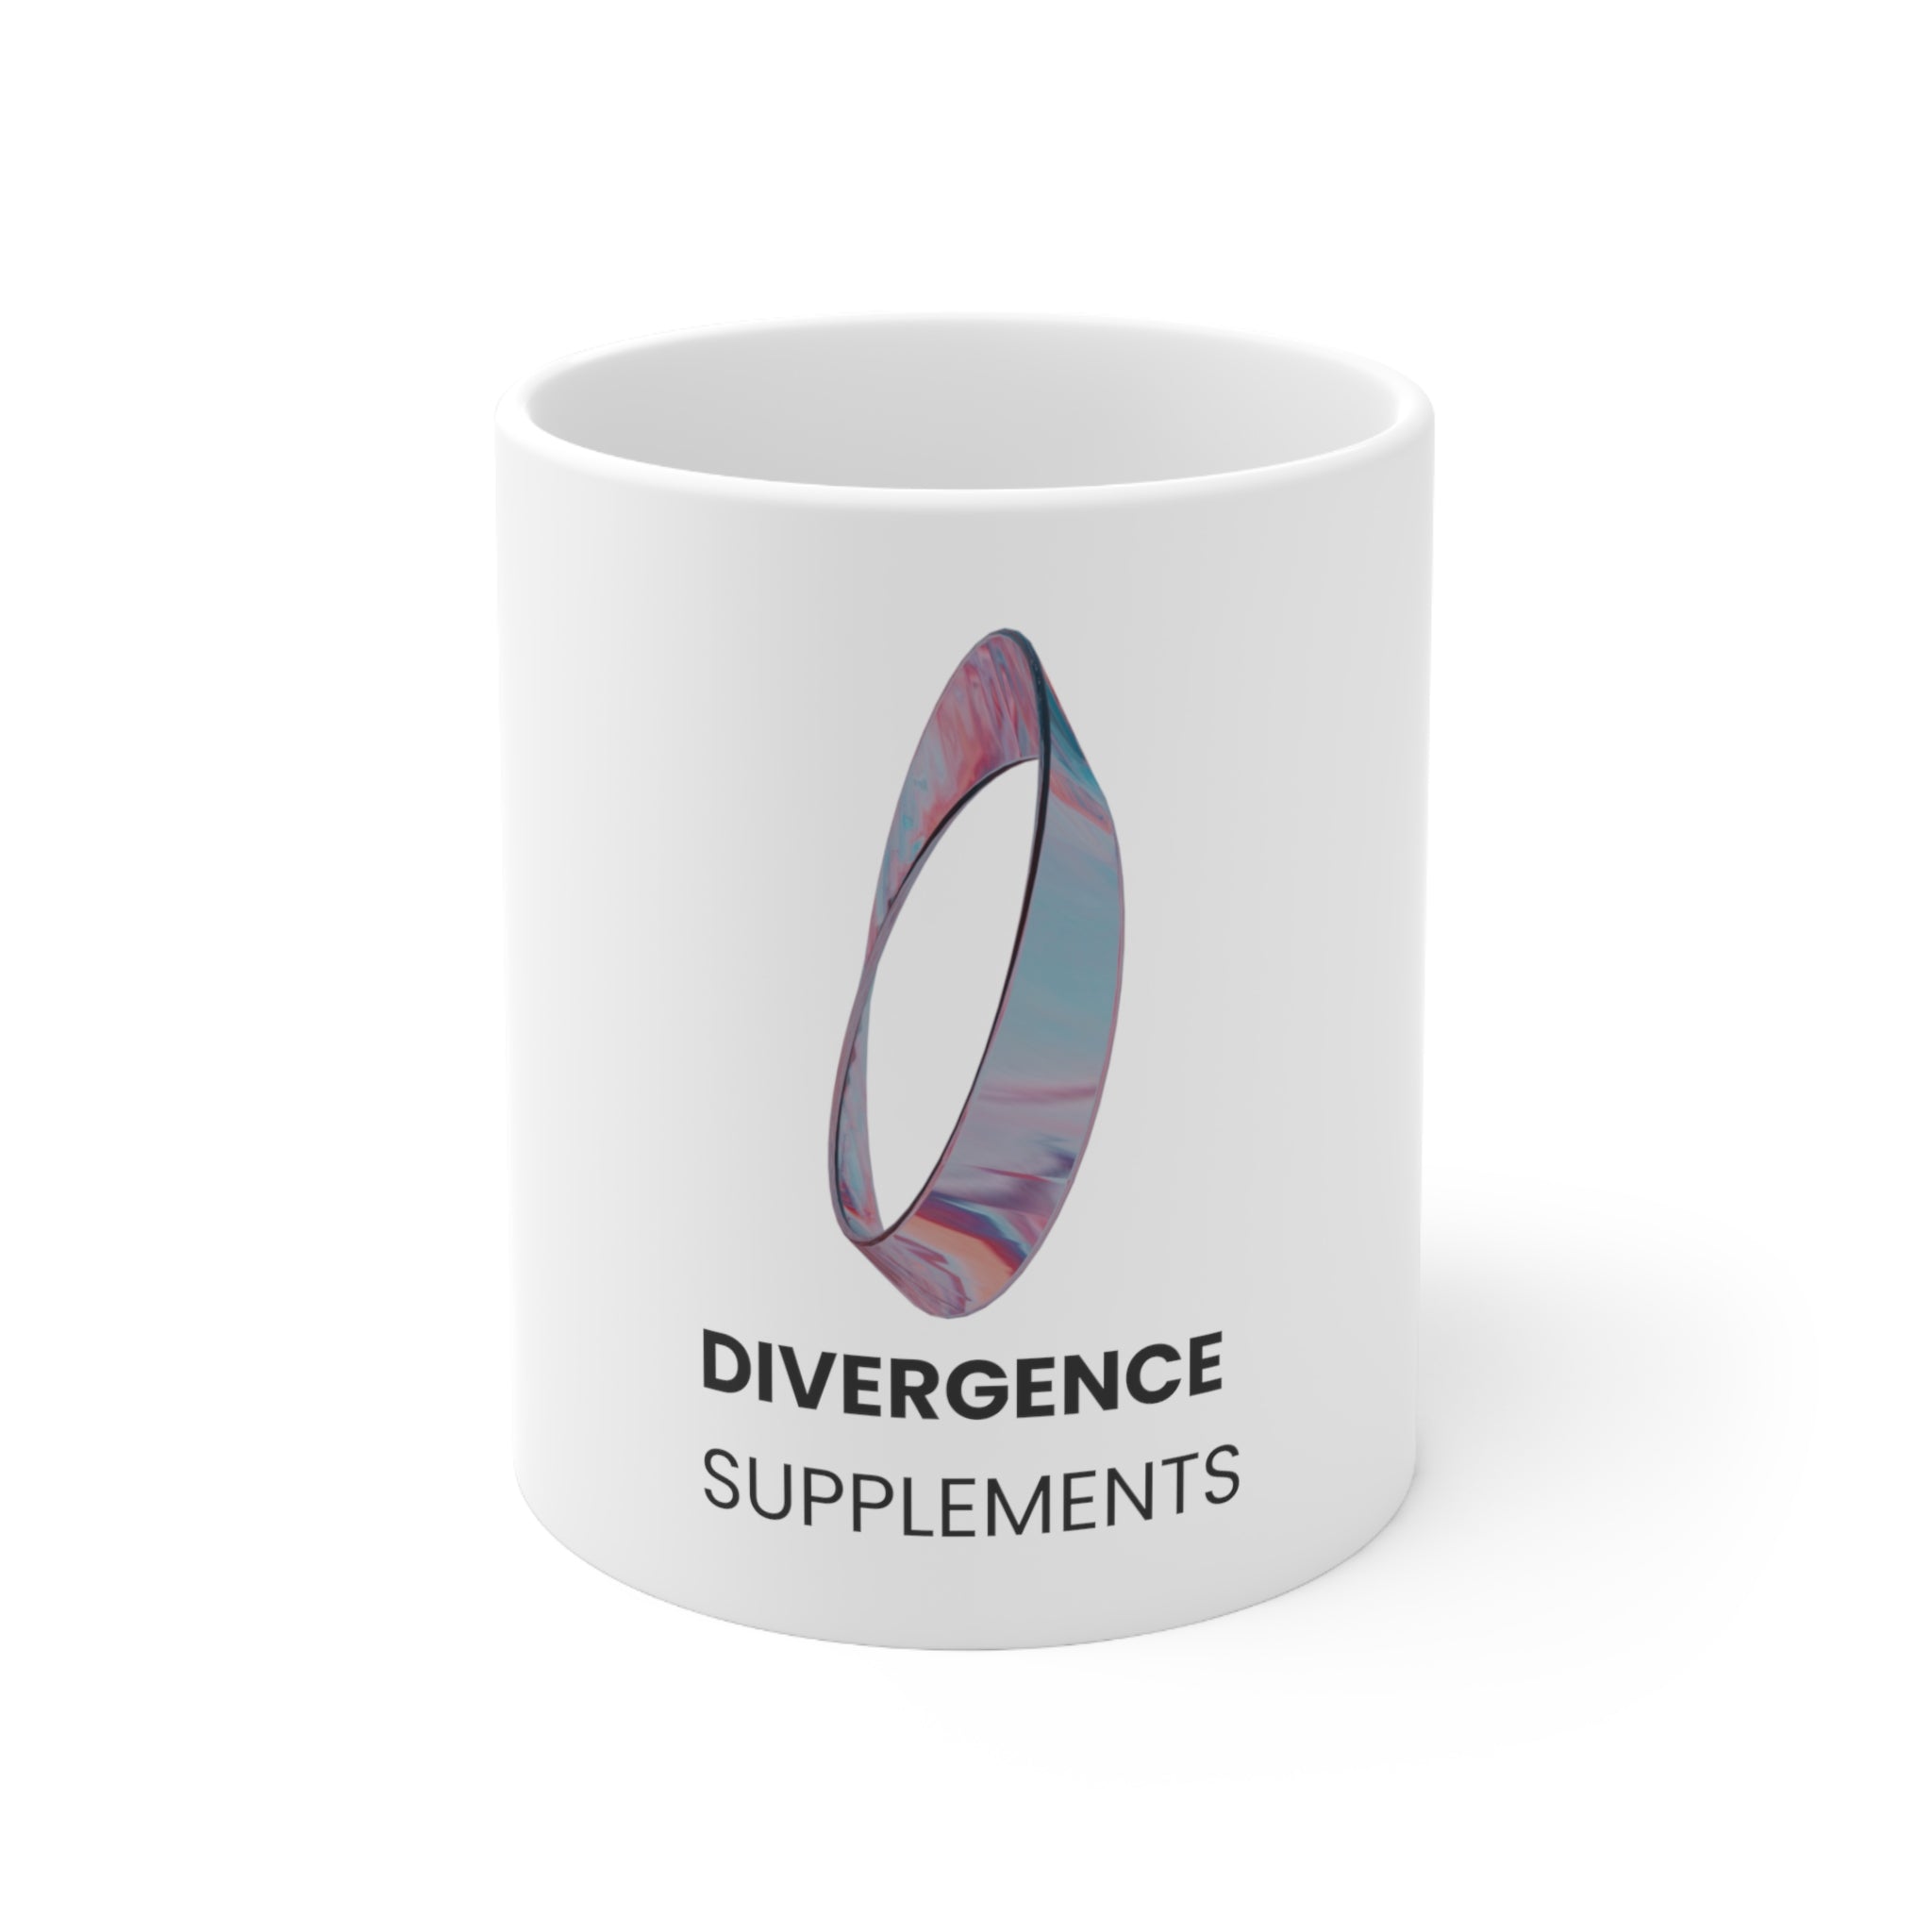 Divergence Supplements Mug